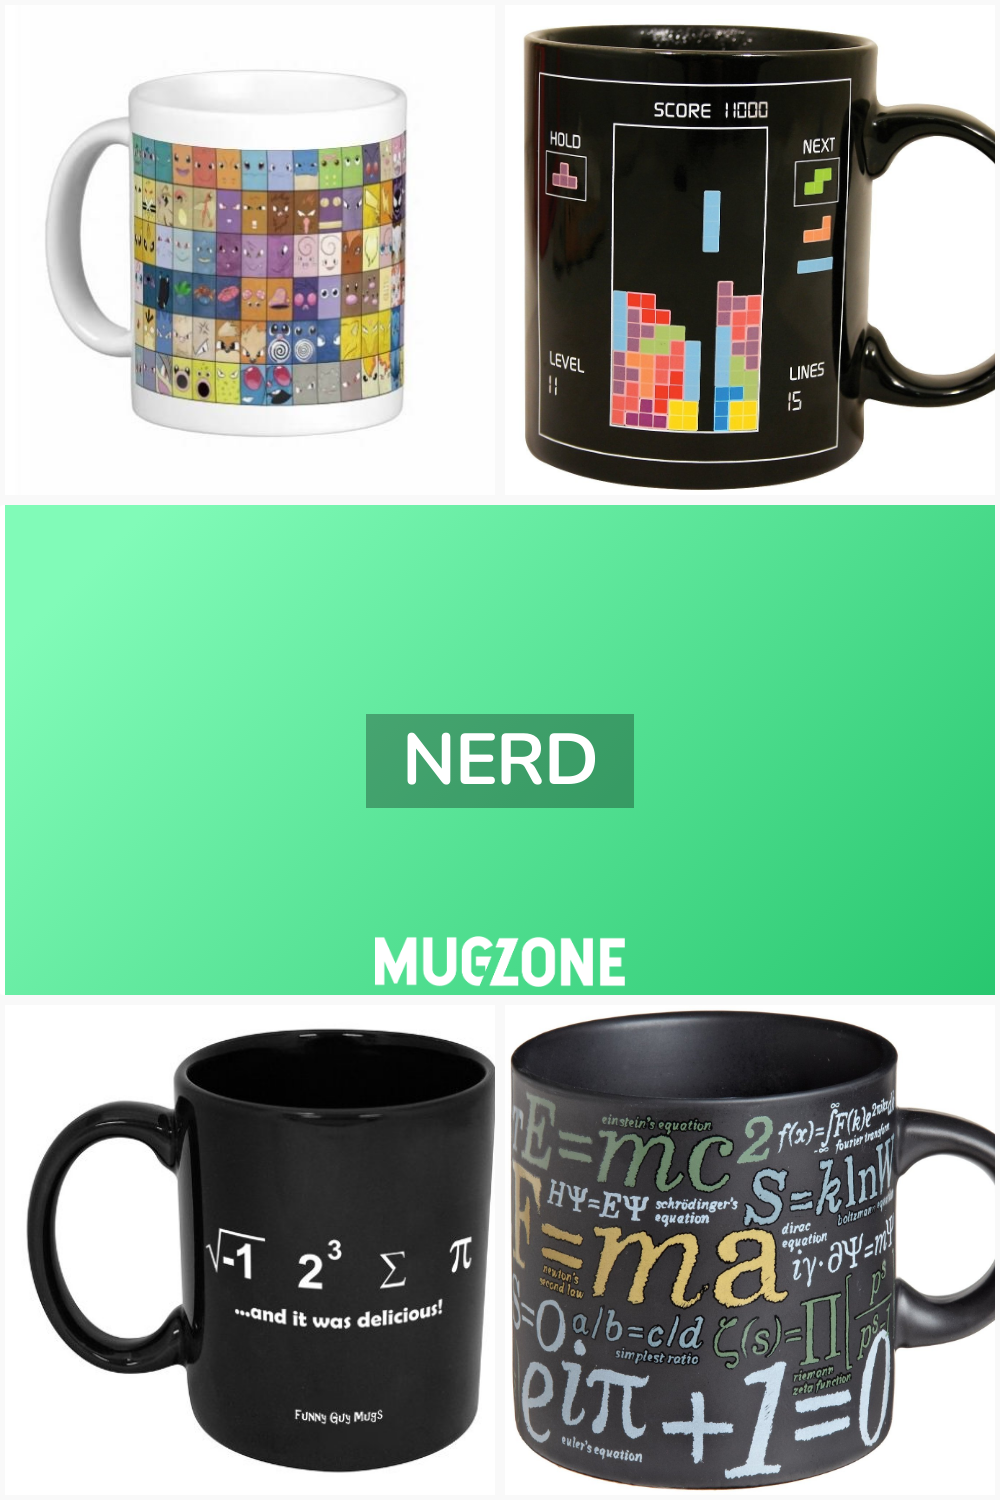 nerd // Mug Zone